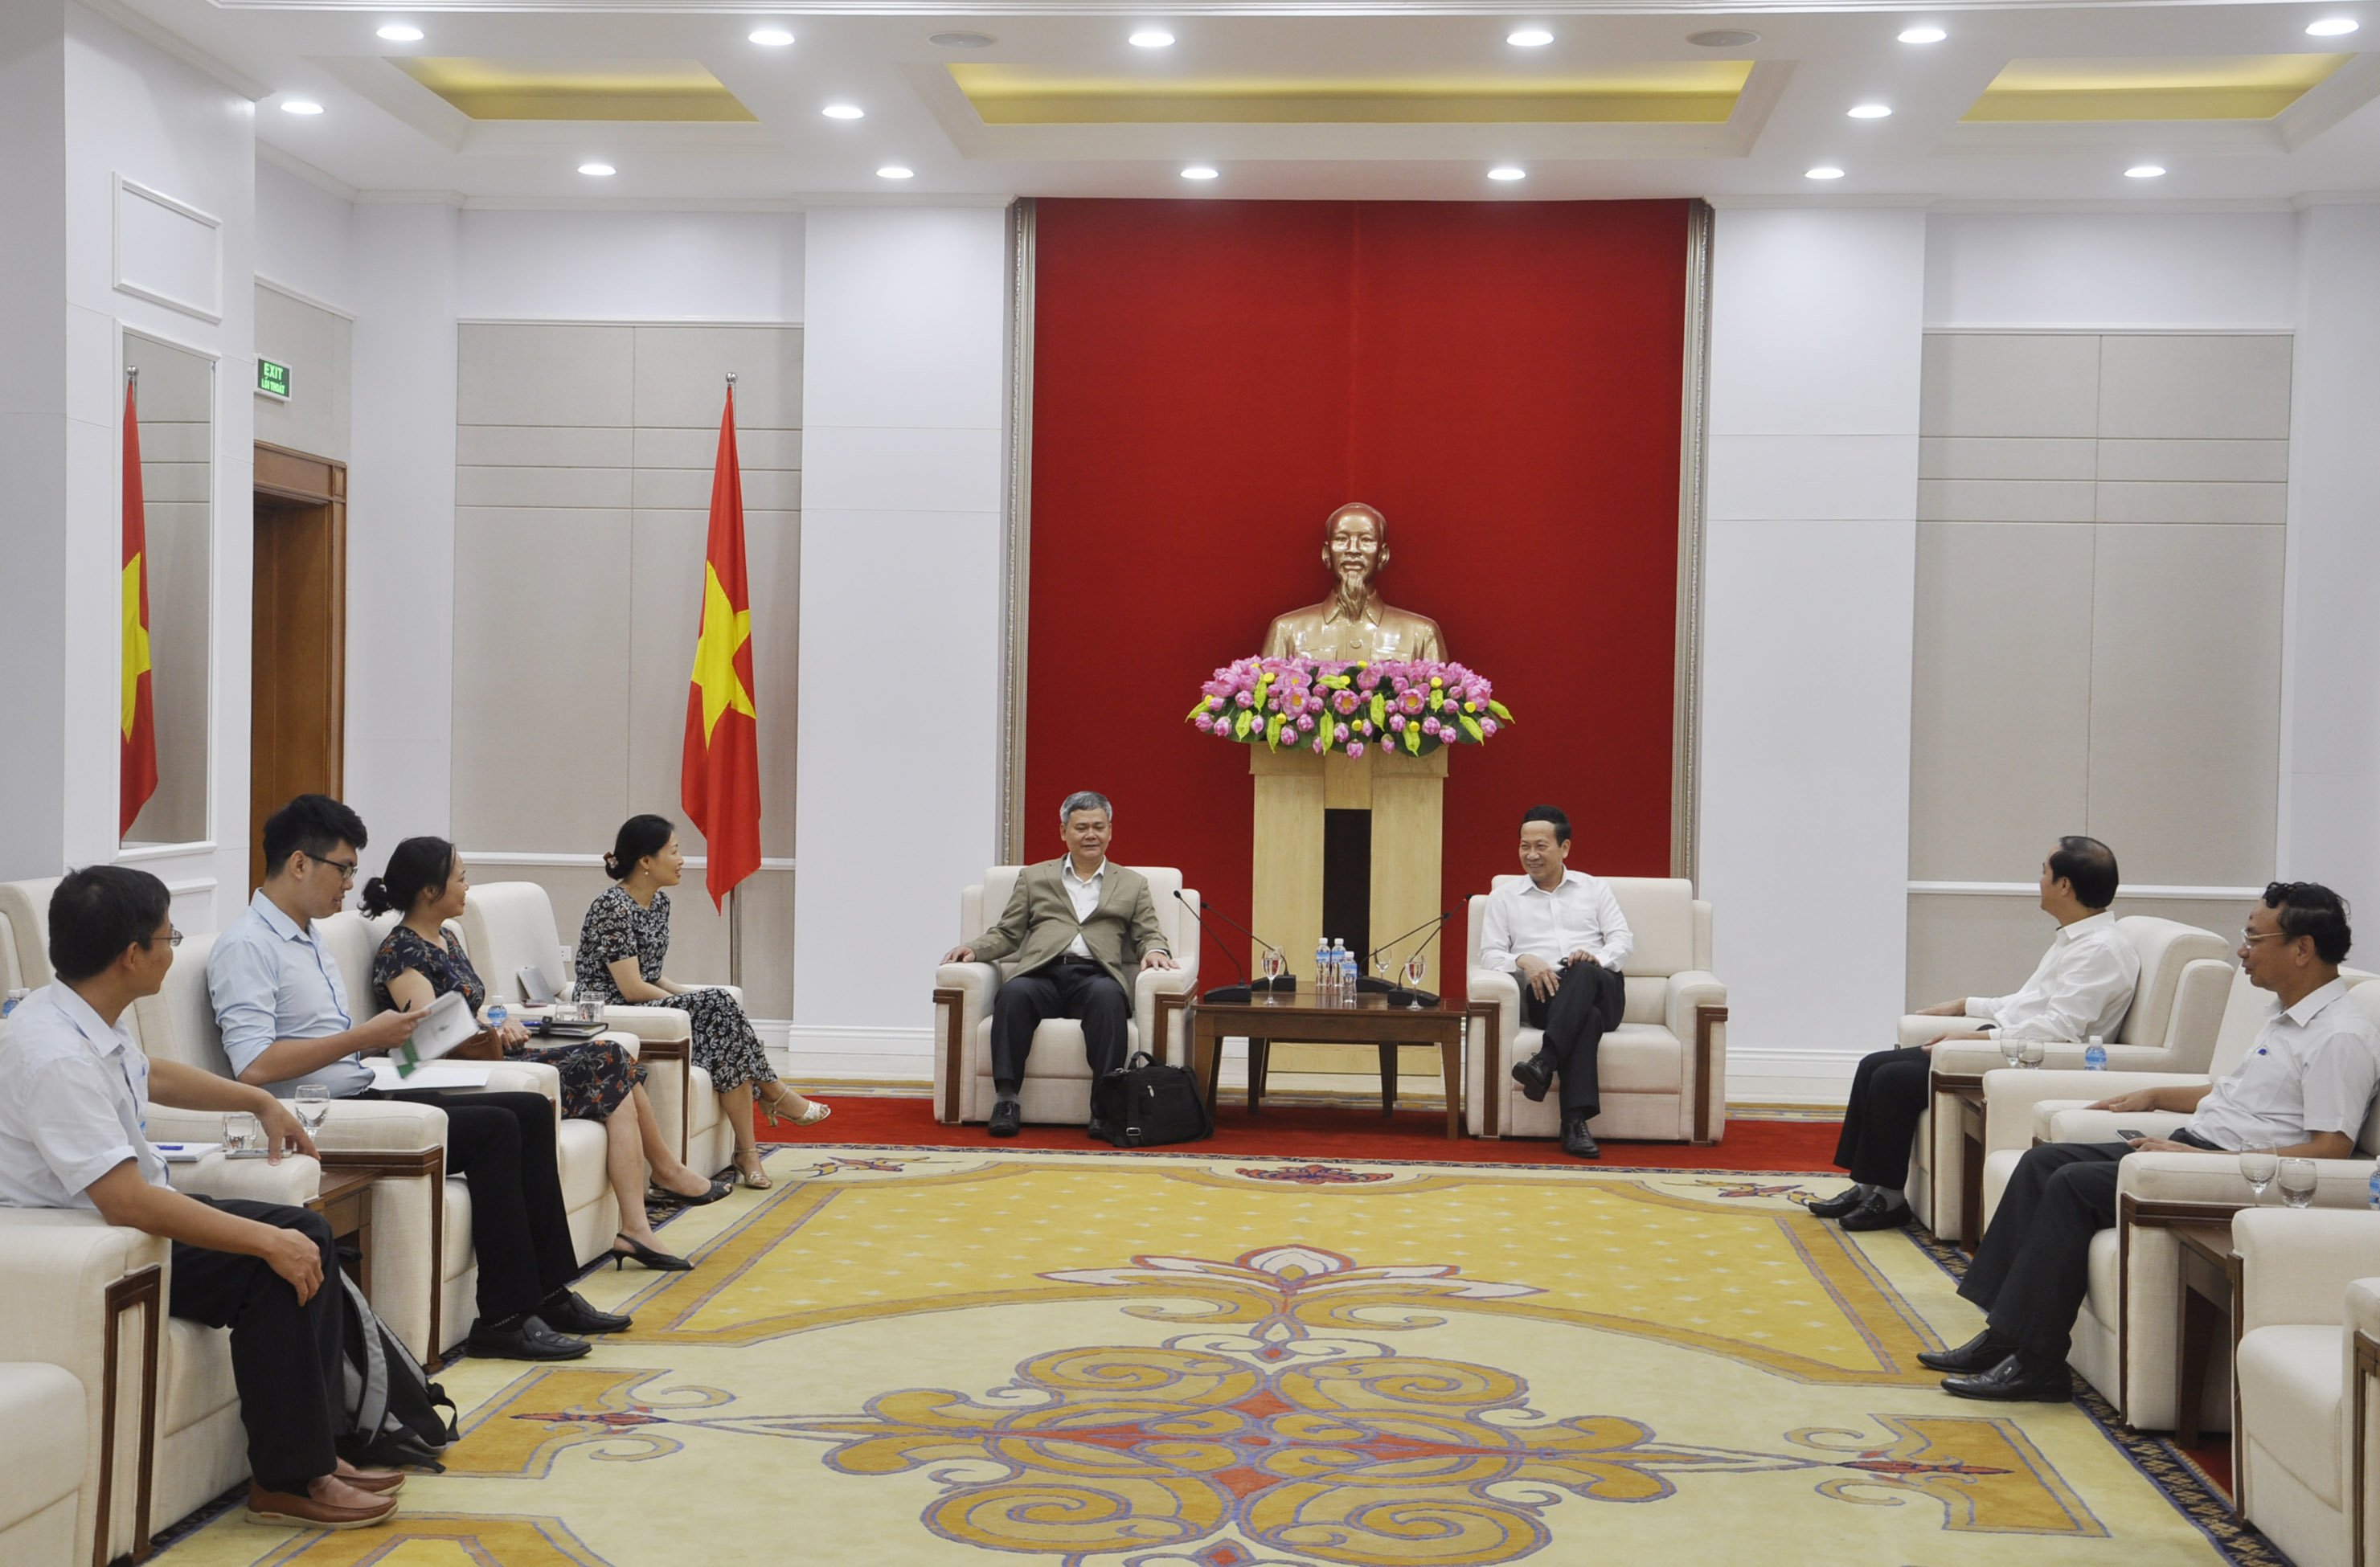 Đồng chí Nguyễn Văn Thành, Phó Chủ tịch UBND tỉnh tiếp đoàn công tác.